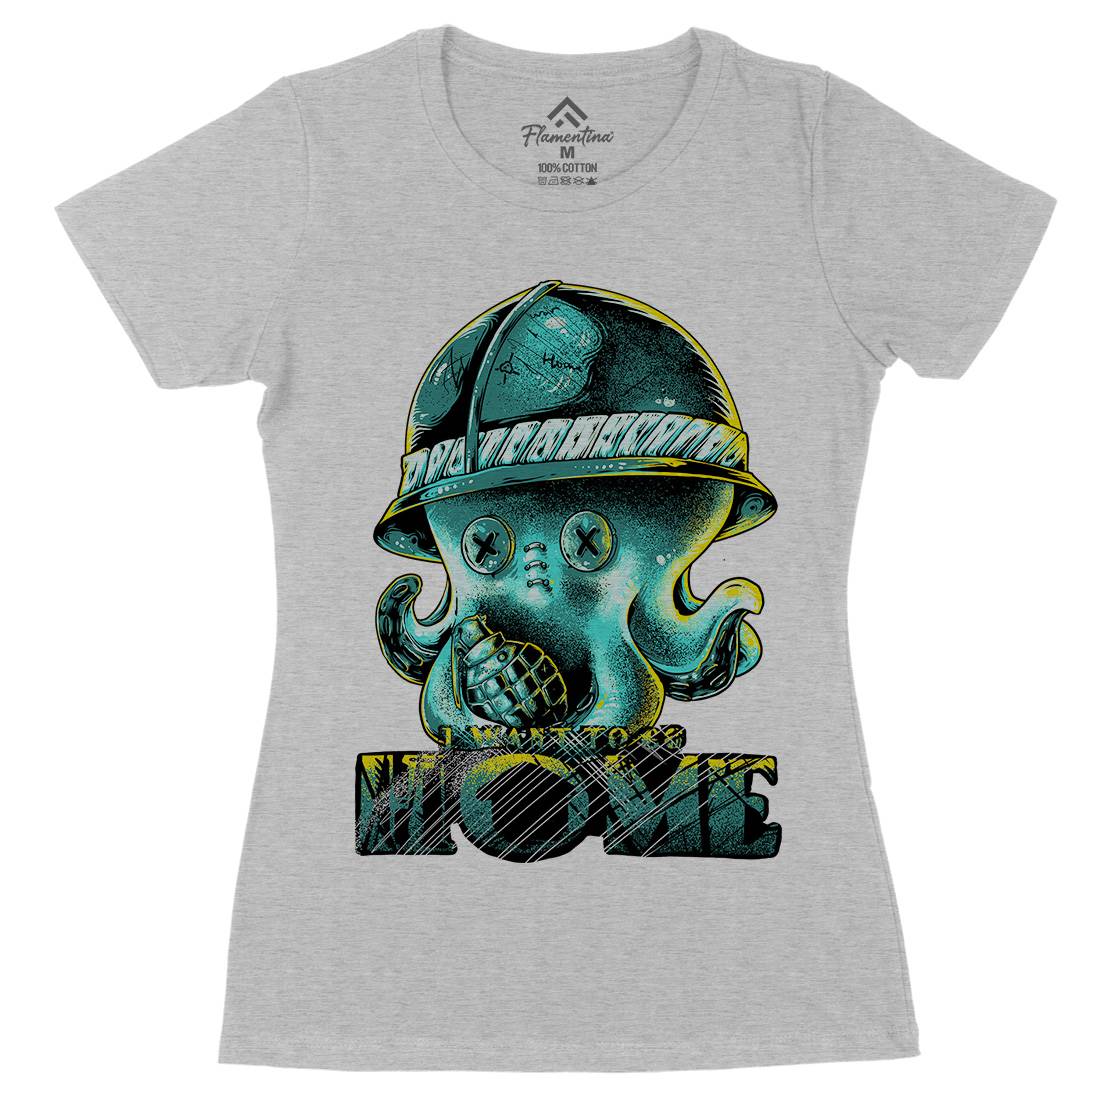 Octopus War Womens Organic Crew Neck T-Shirt Army B993